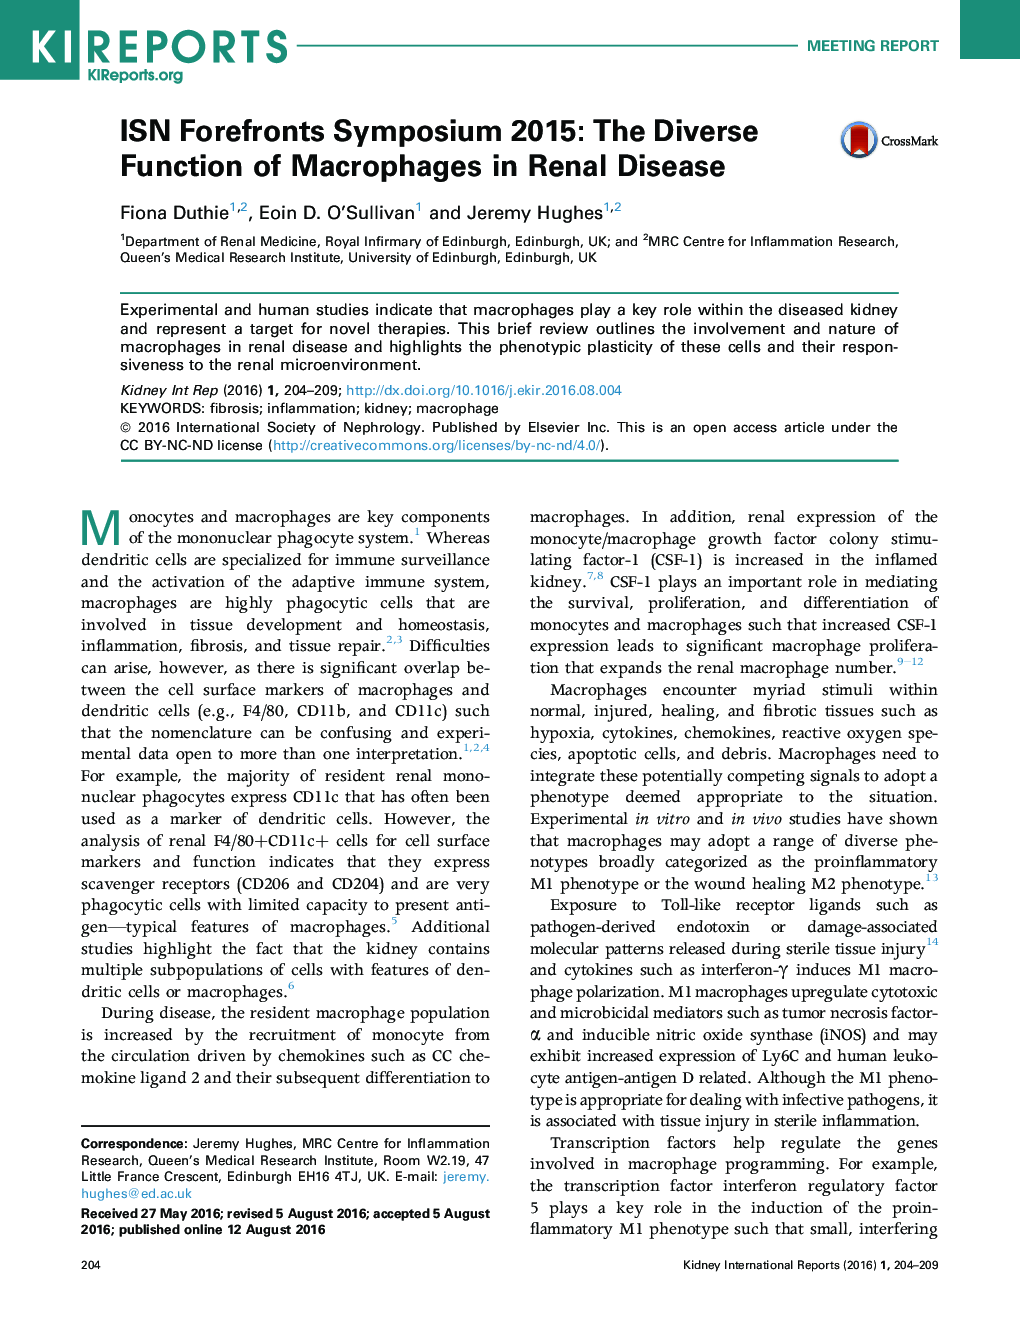 سمینار آموزشی ISN Forefrontts 2015: تابع متفاوتی از ماکروفاژها در بیماری کلیوی